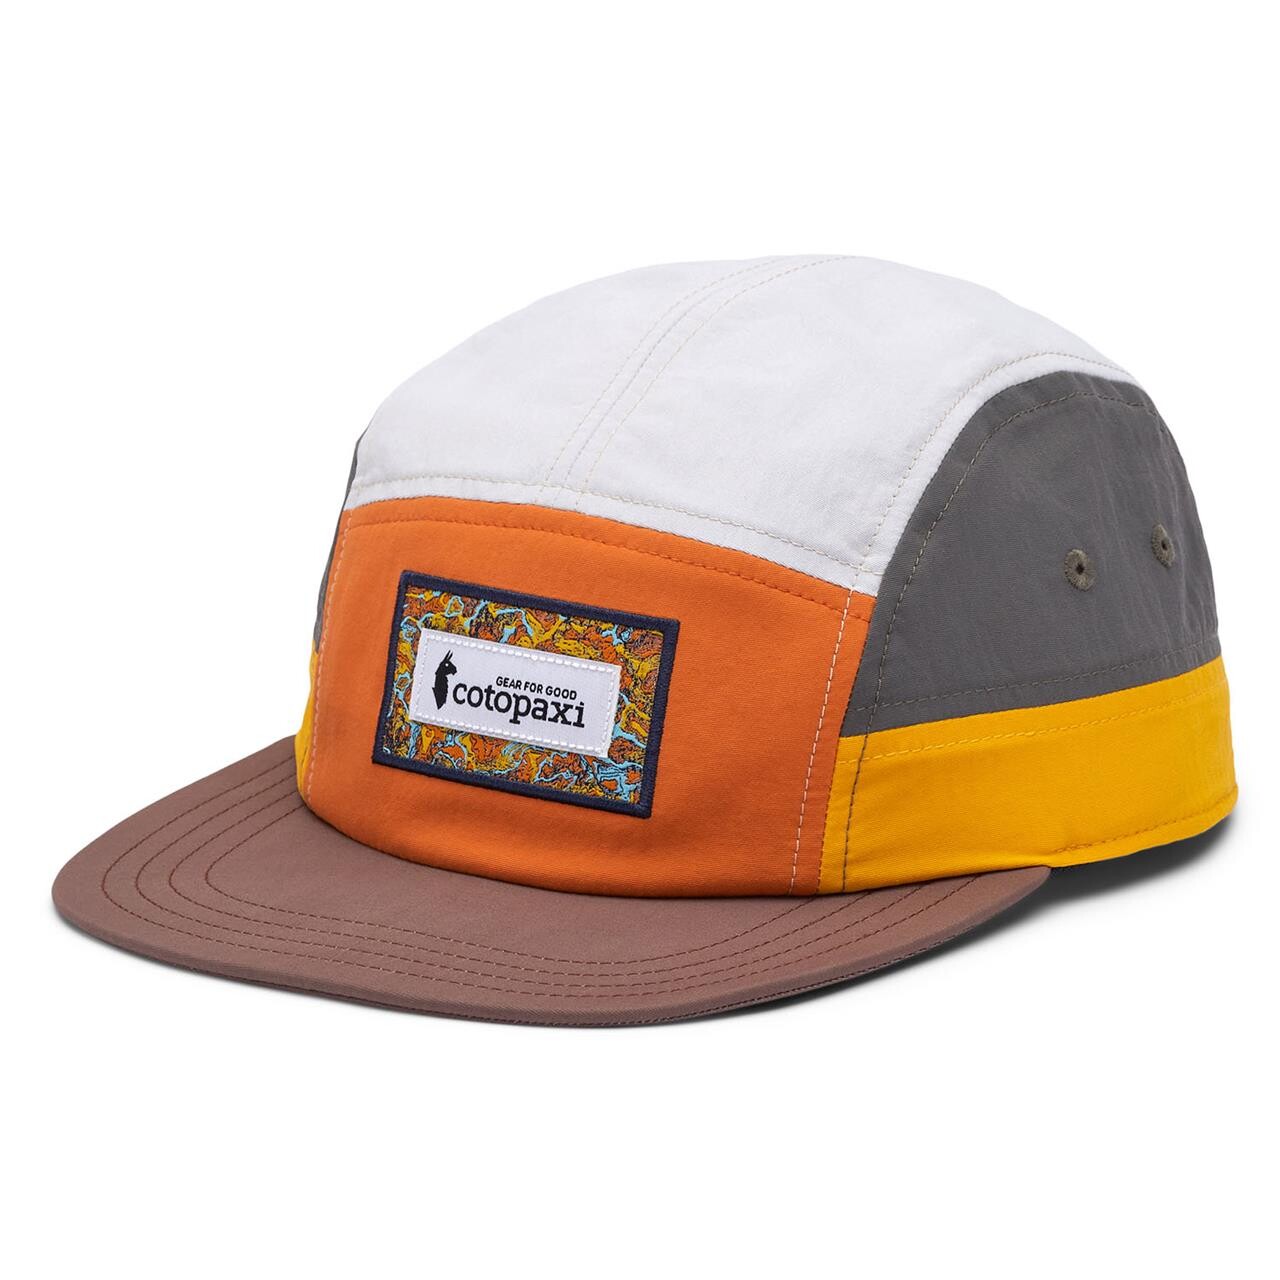 Billede af Cotopaxi Altitude Tech 5-panel Hat (Orange (TAMARINDO/ACORN) One size)